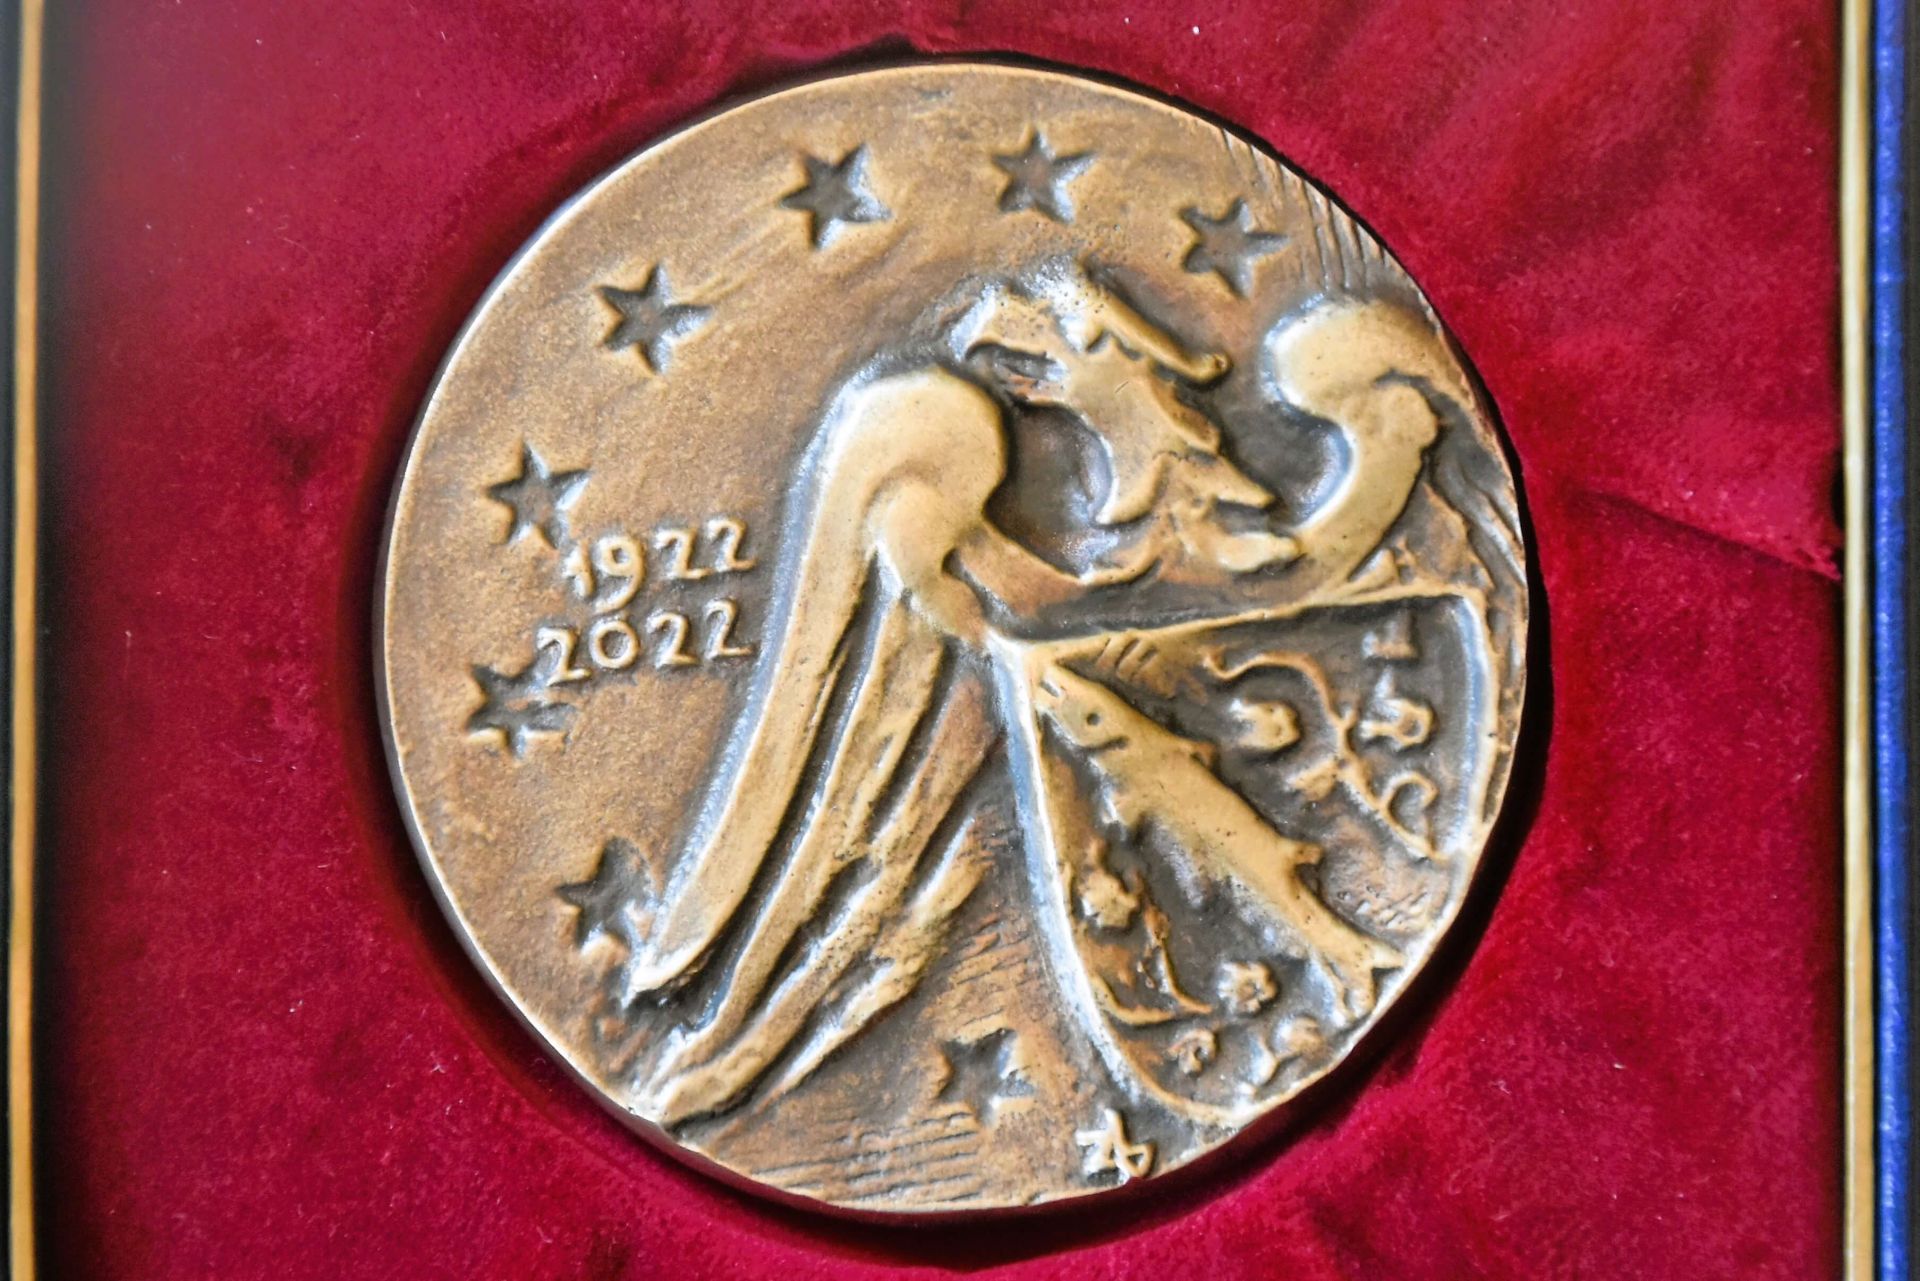 Na jubileusz przygotowano specjalny medal. Zdj. Aleksander Król